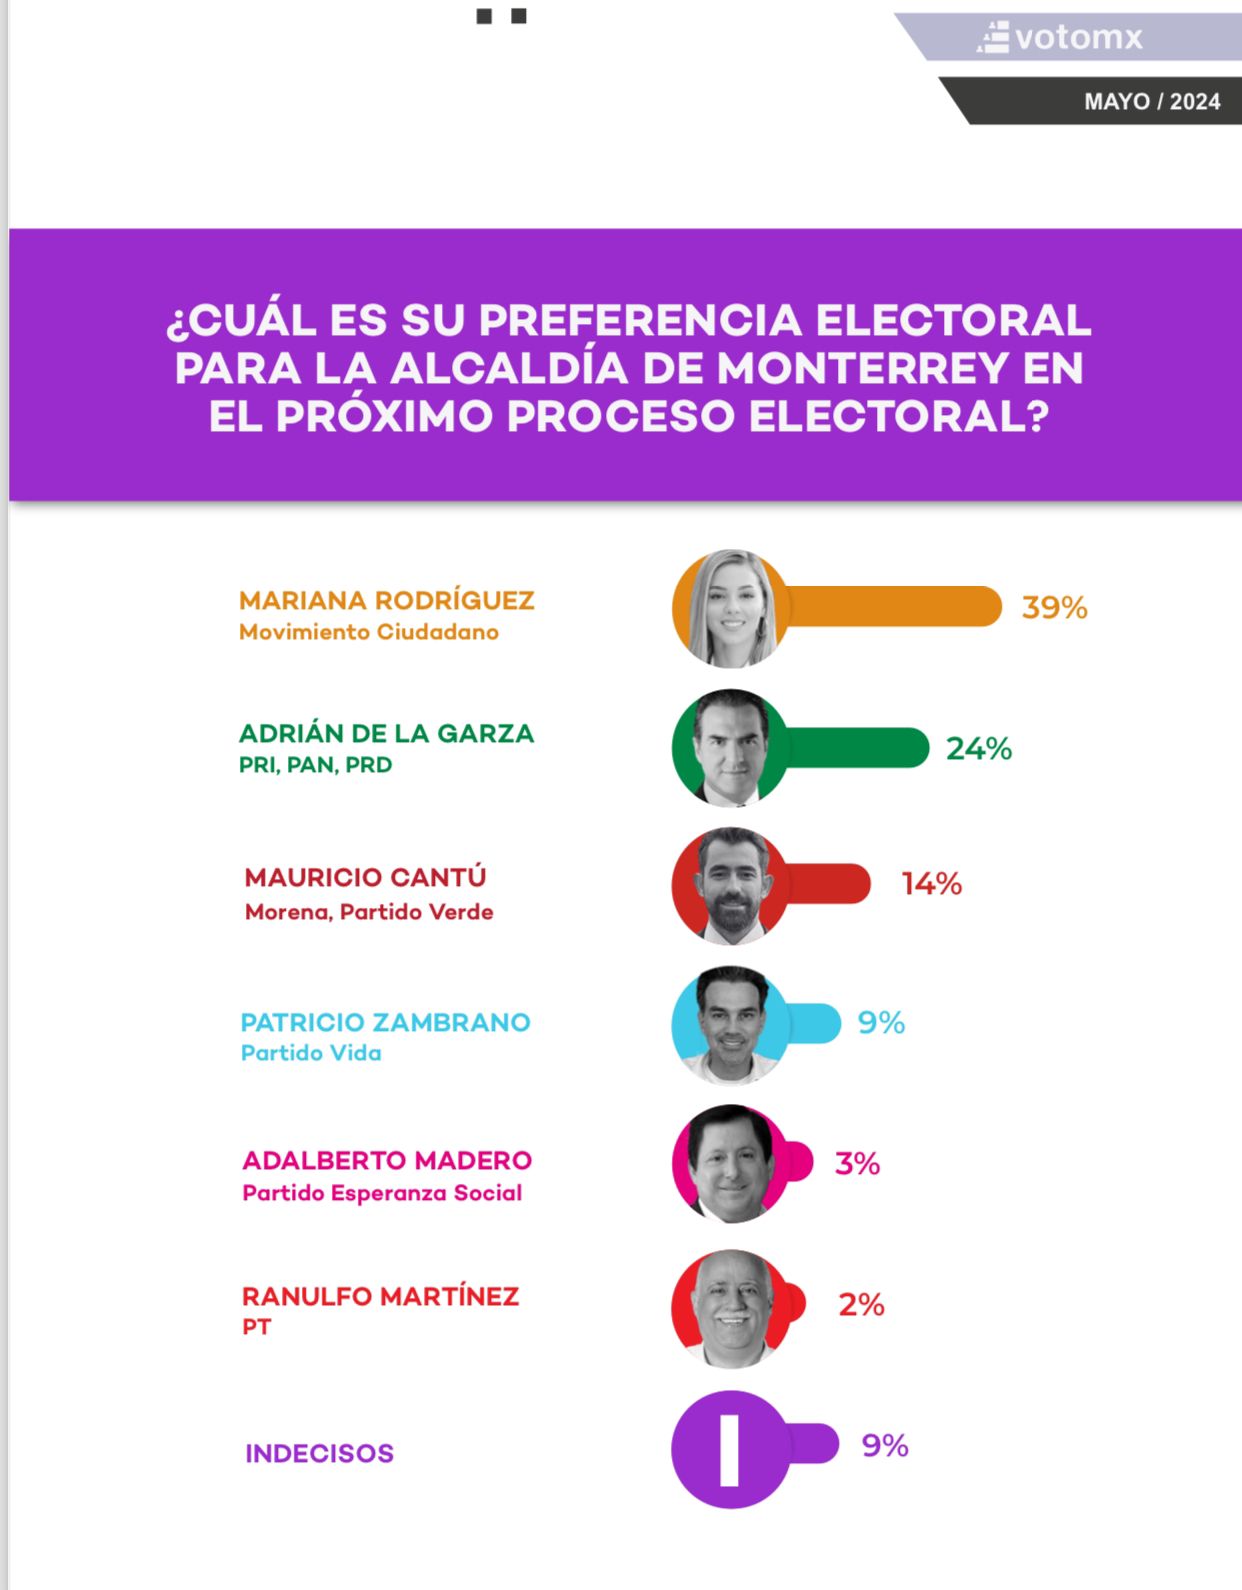 Ganaría Mariana Rodríguez por más de 15 puntos : VotoMX